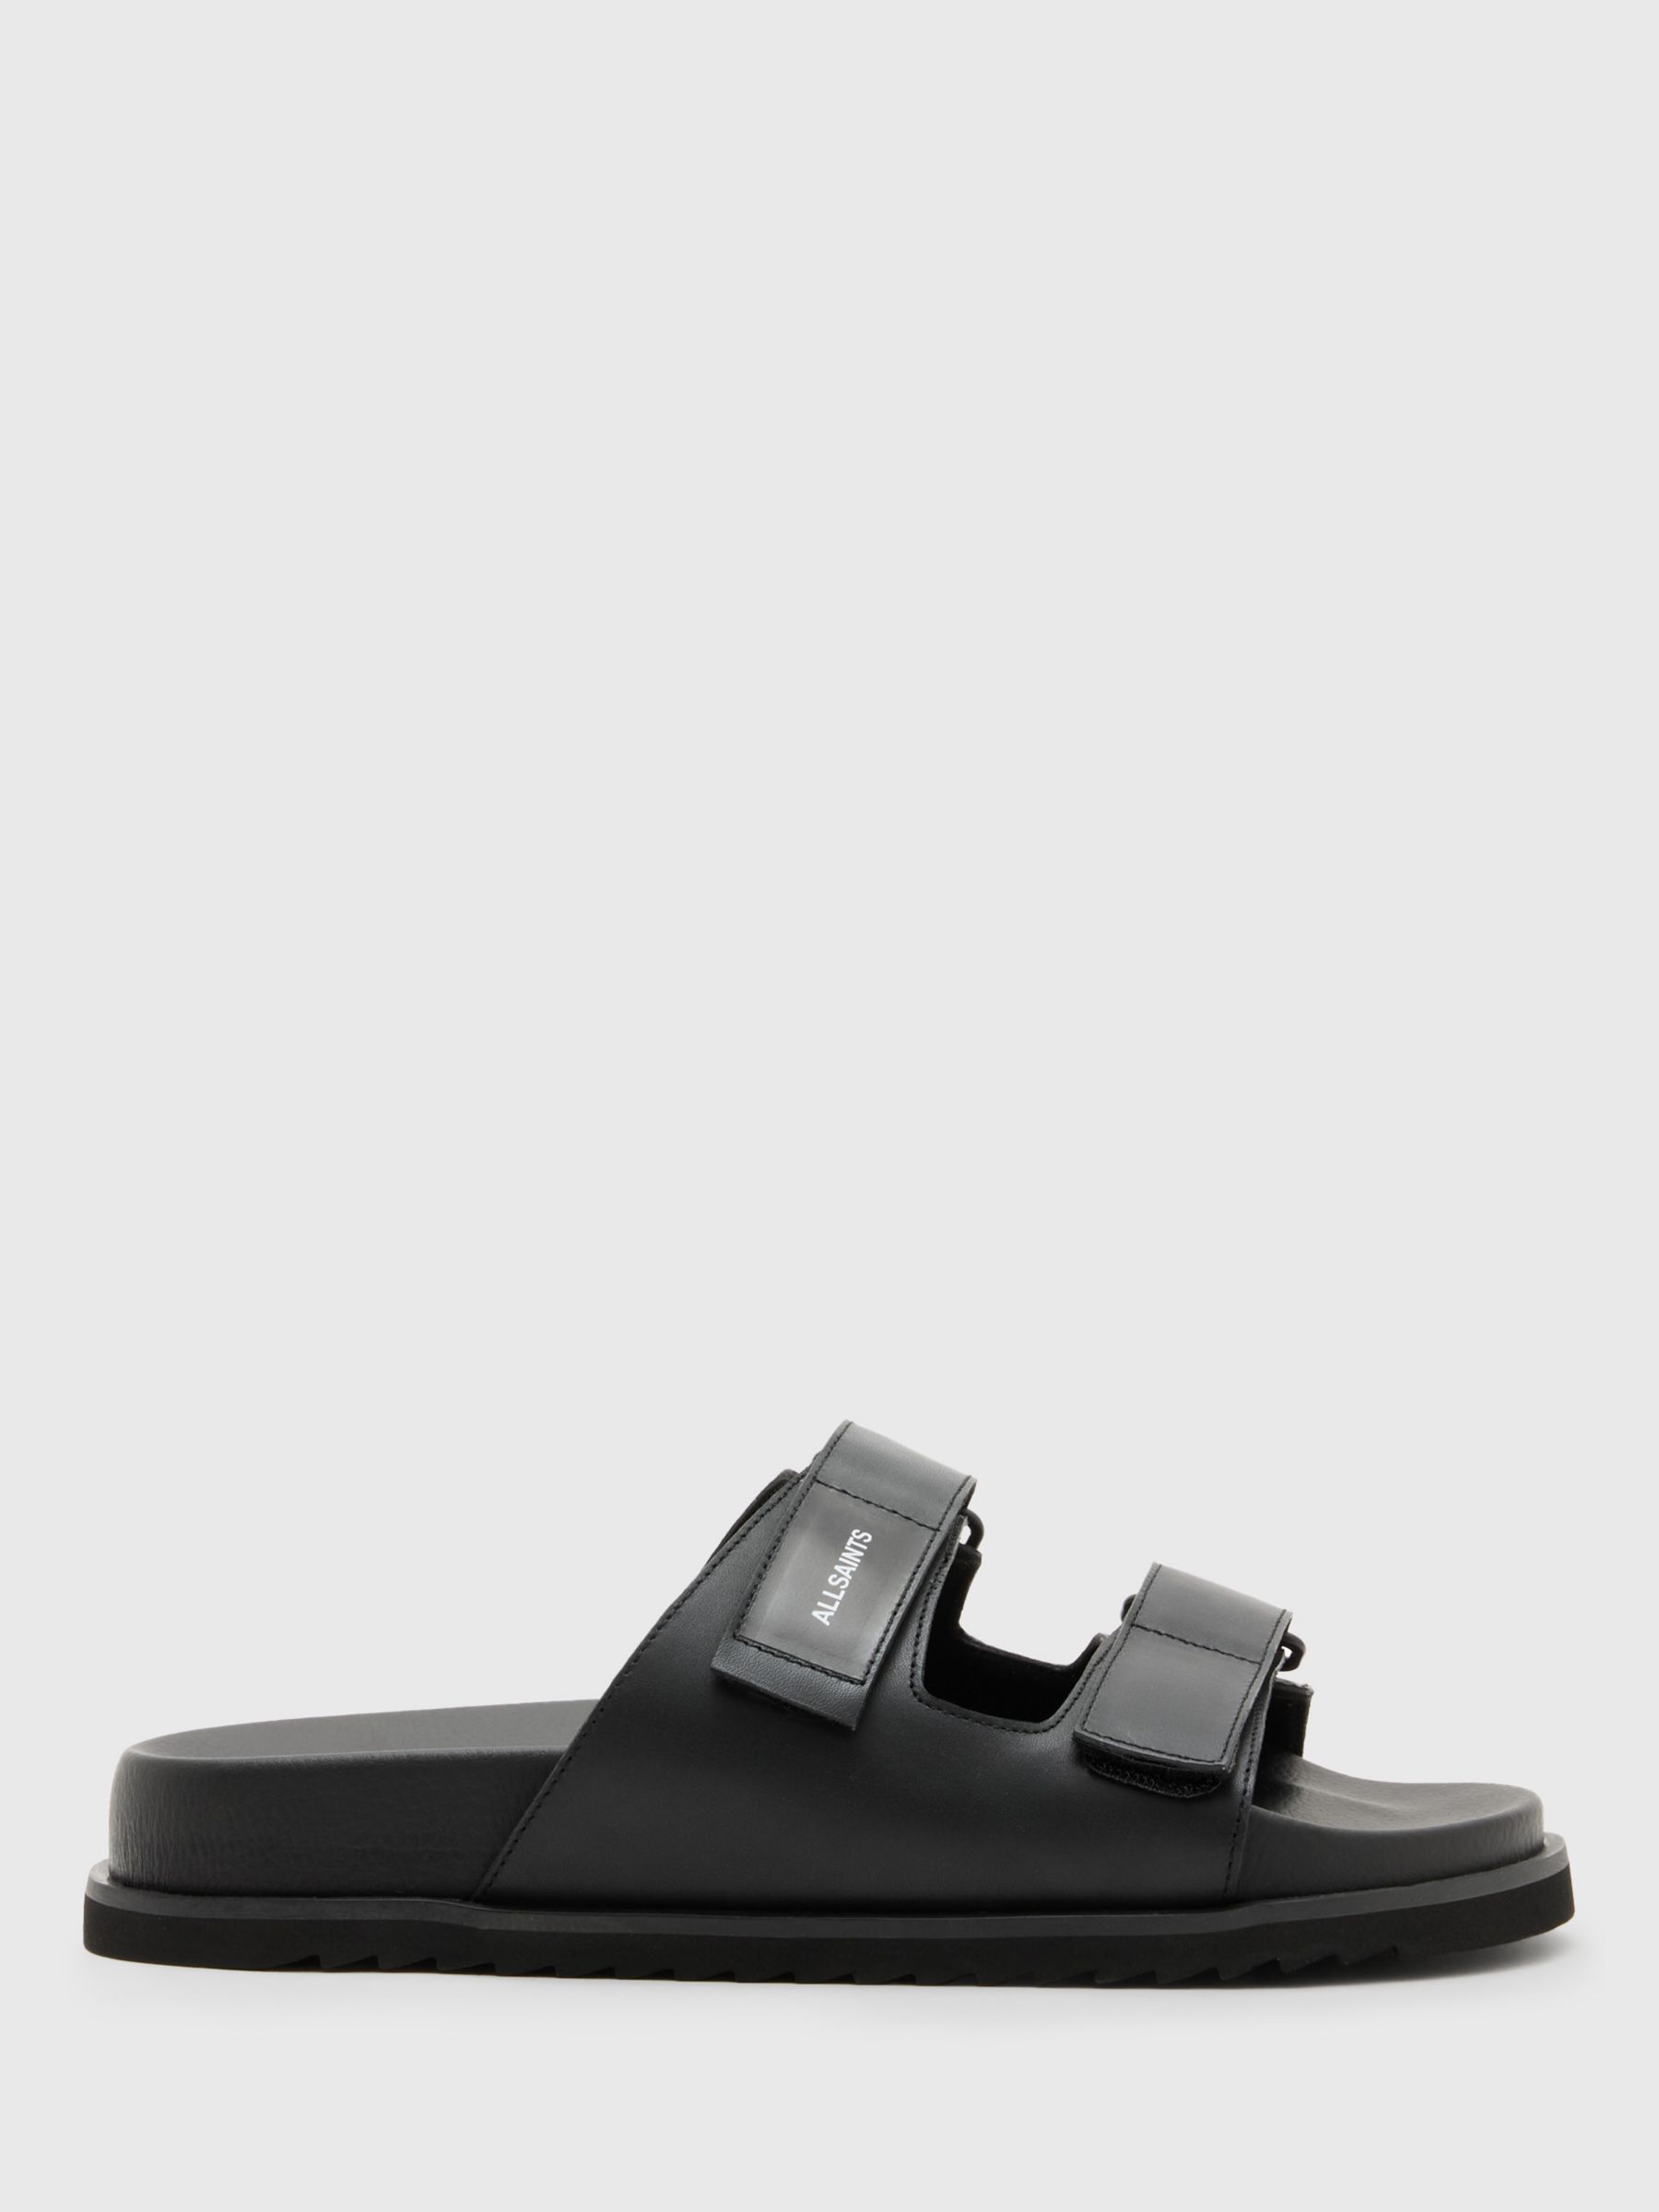 AllSaints Vex Double Strap Leather Sandals, Black, 10